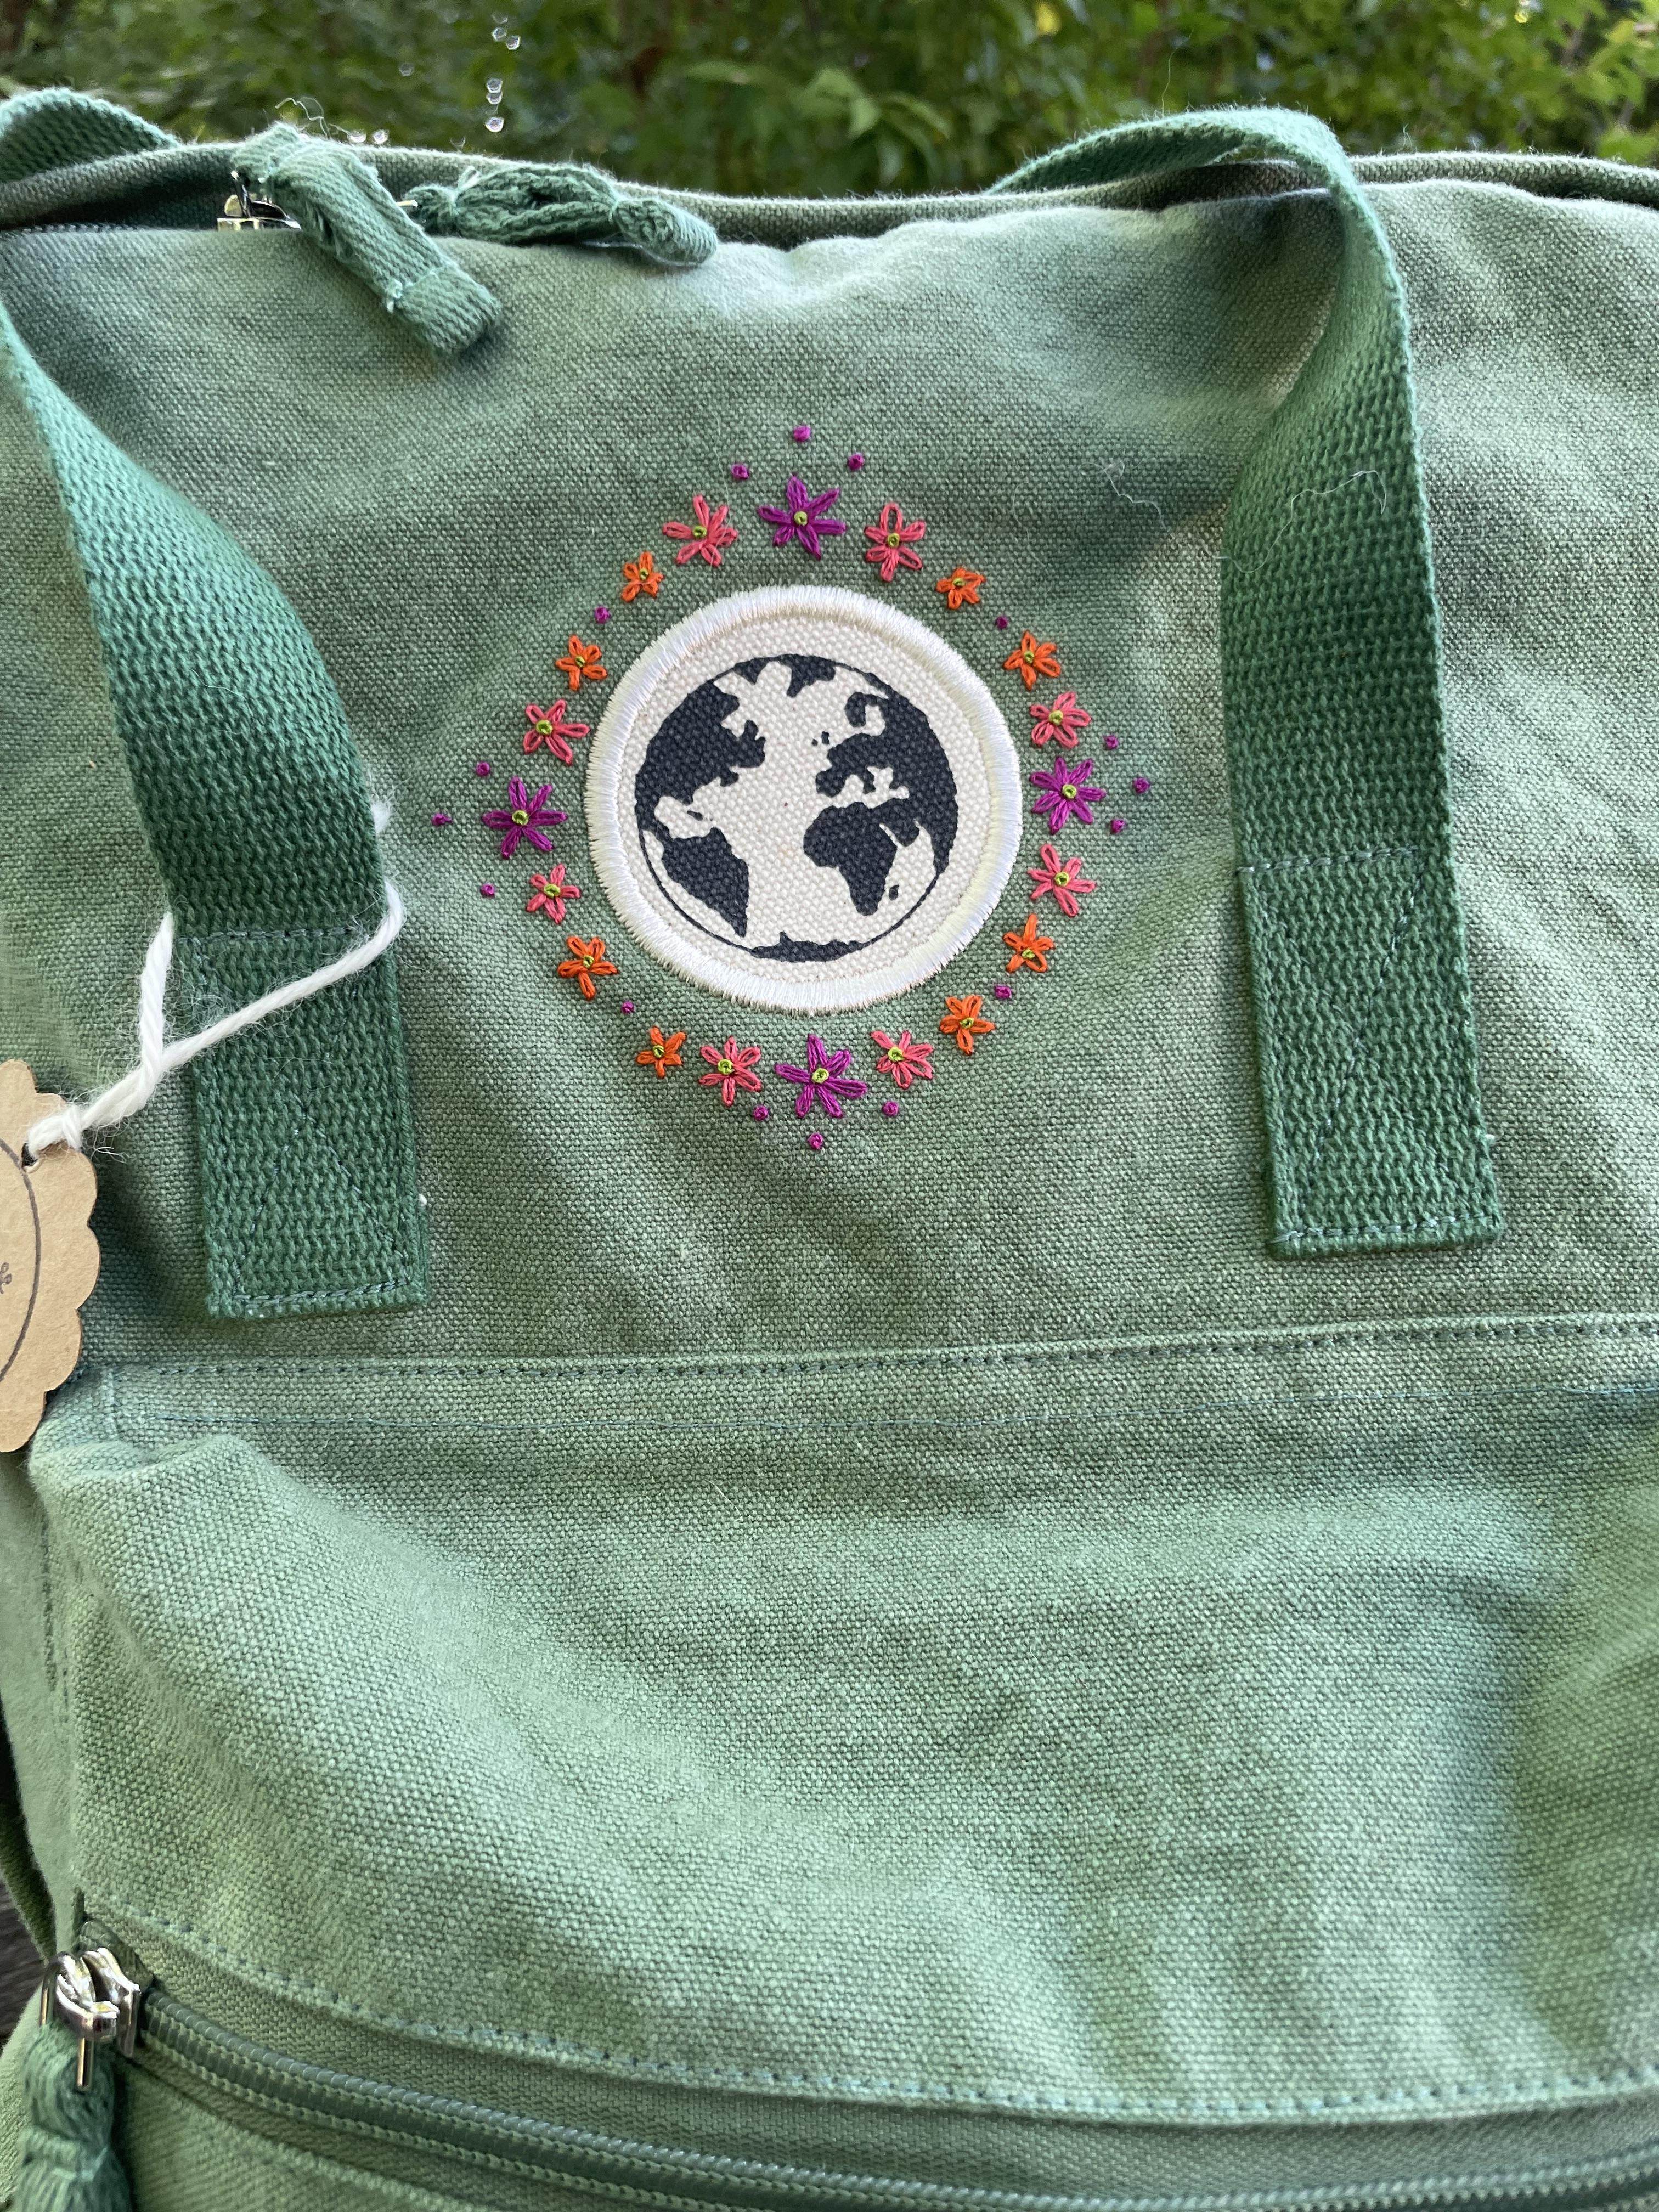 Handbestickter Rucksack mintgrün Blumenranke